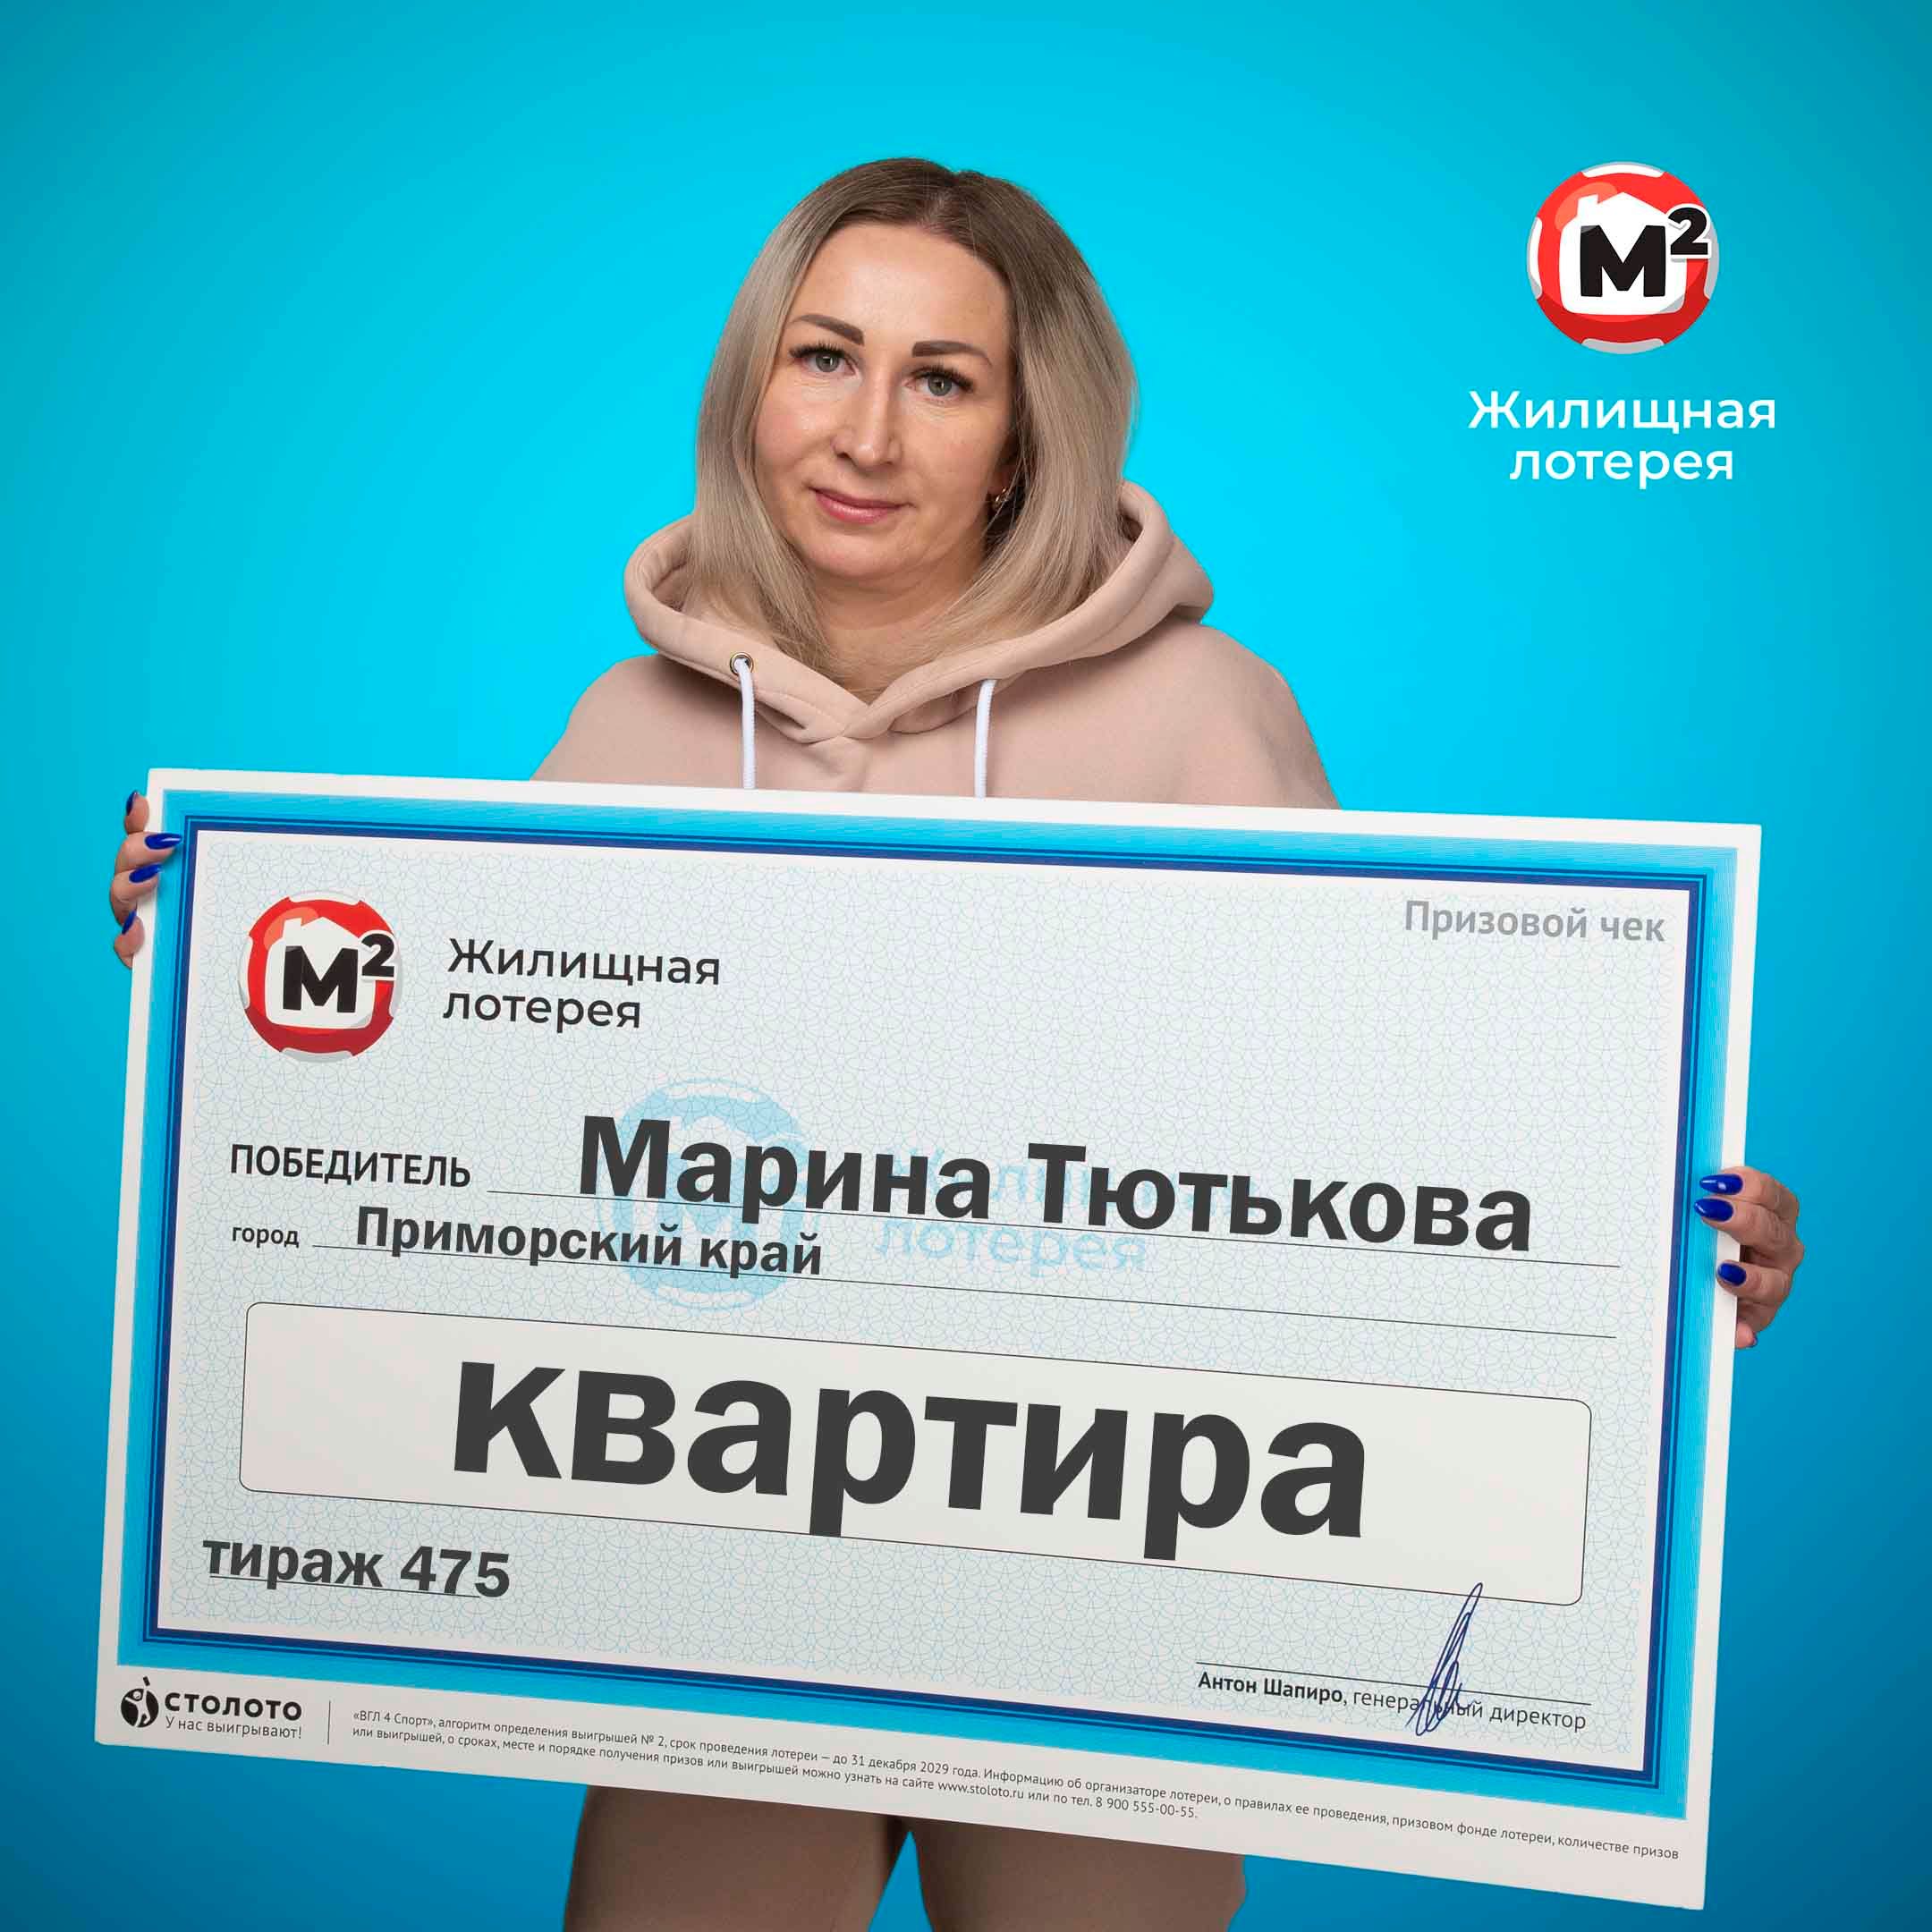 Марина Тютькова